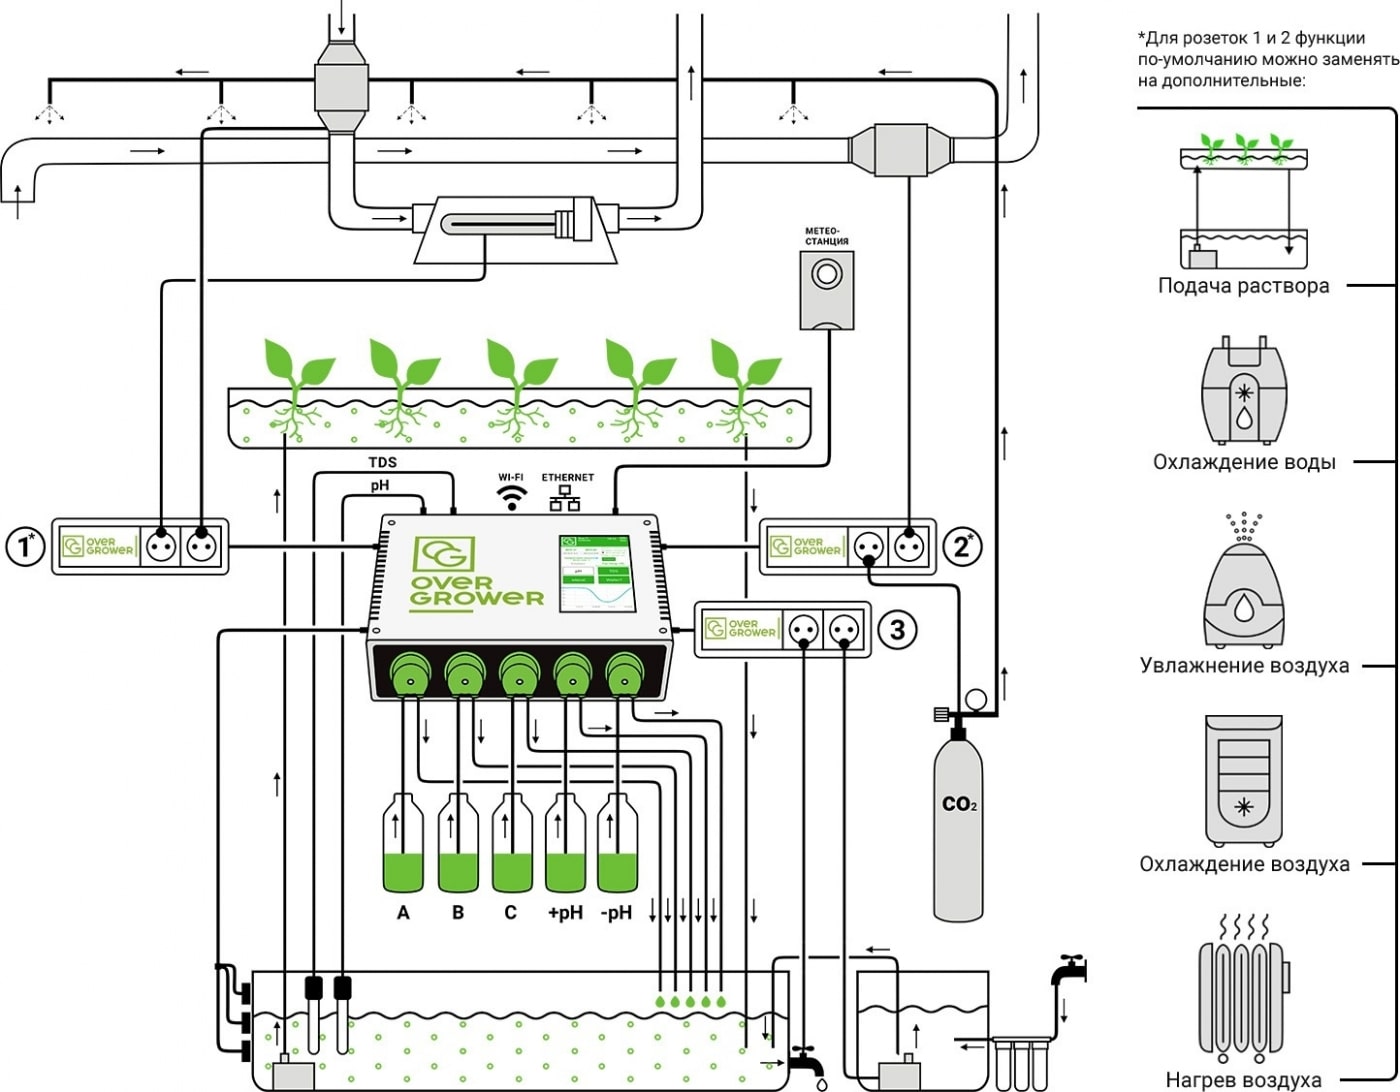 Схема работы прибор автоматизации выращивания растений OverGrower